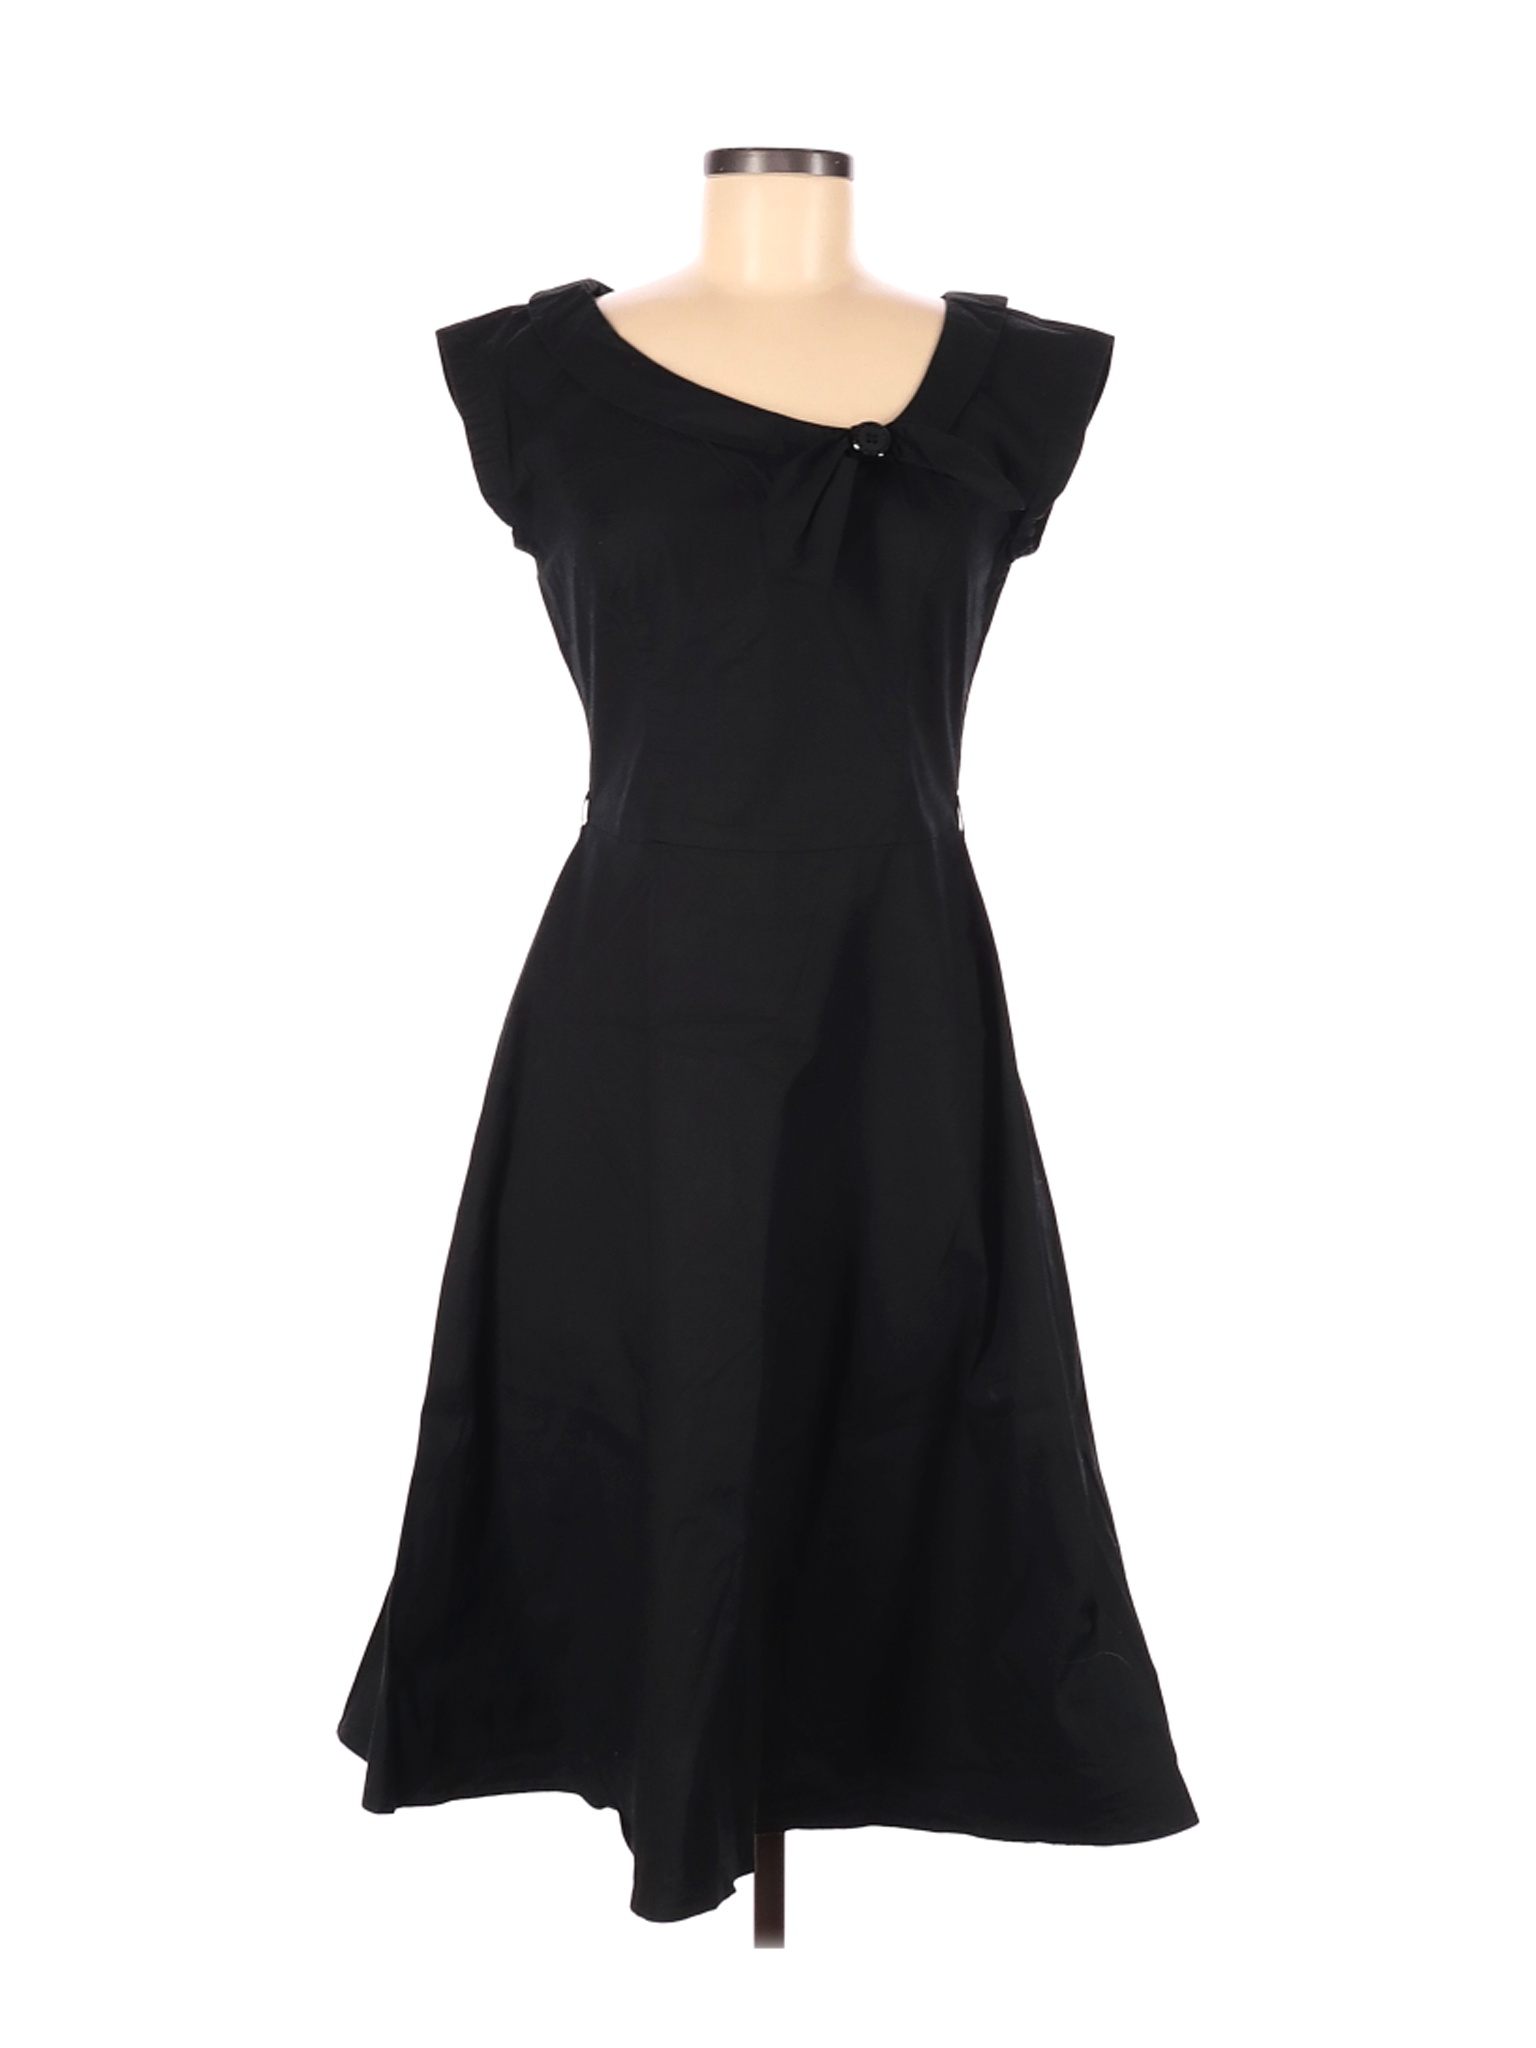 Witchery Women Black Casual Dress 12 | eBay